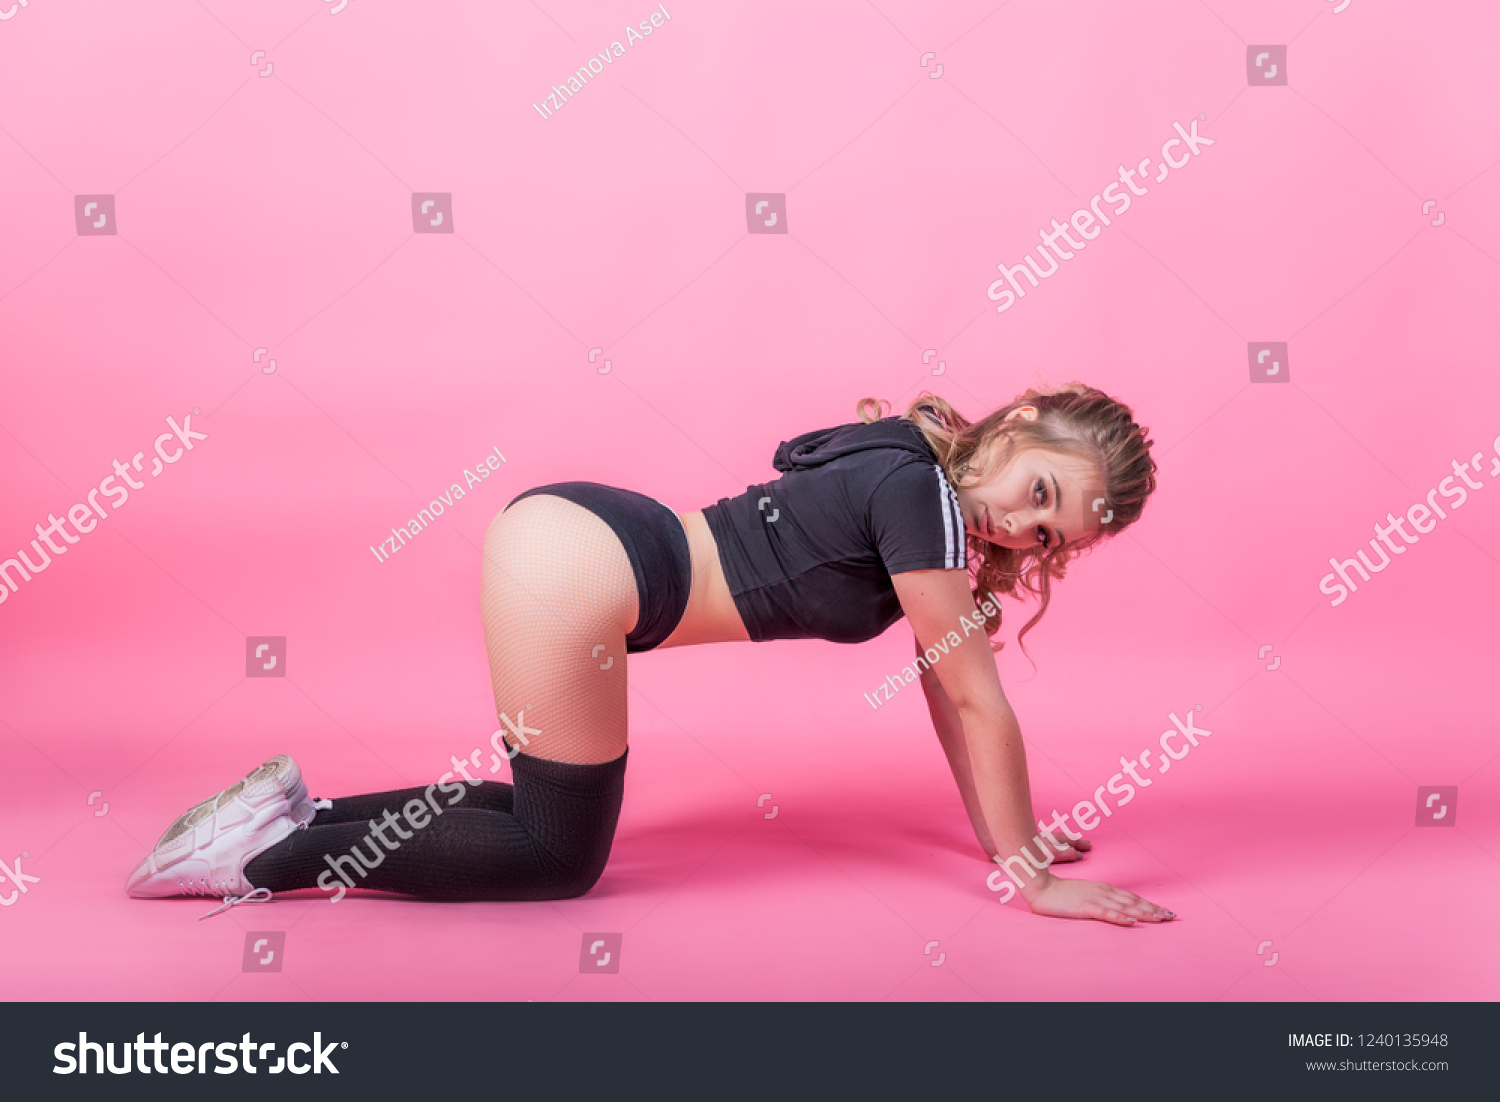 Sexy ass twerking